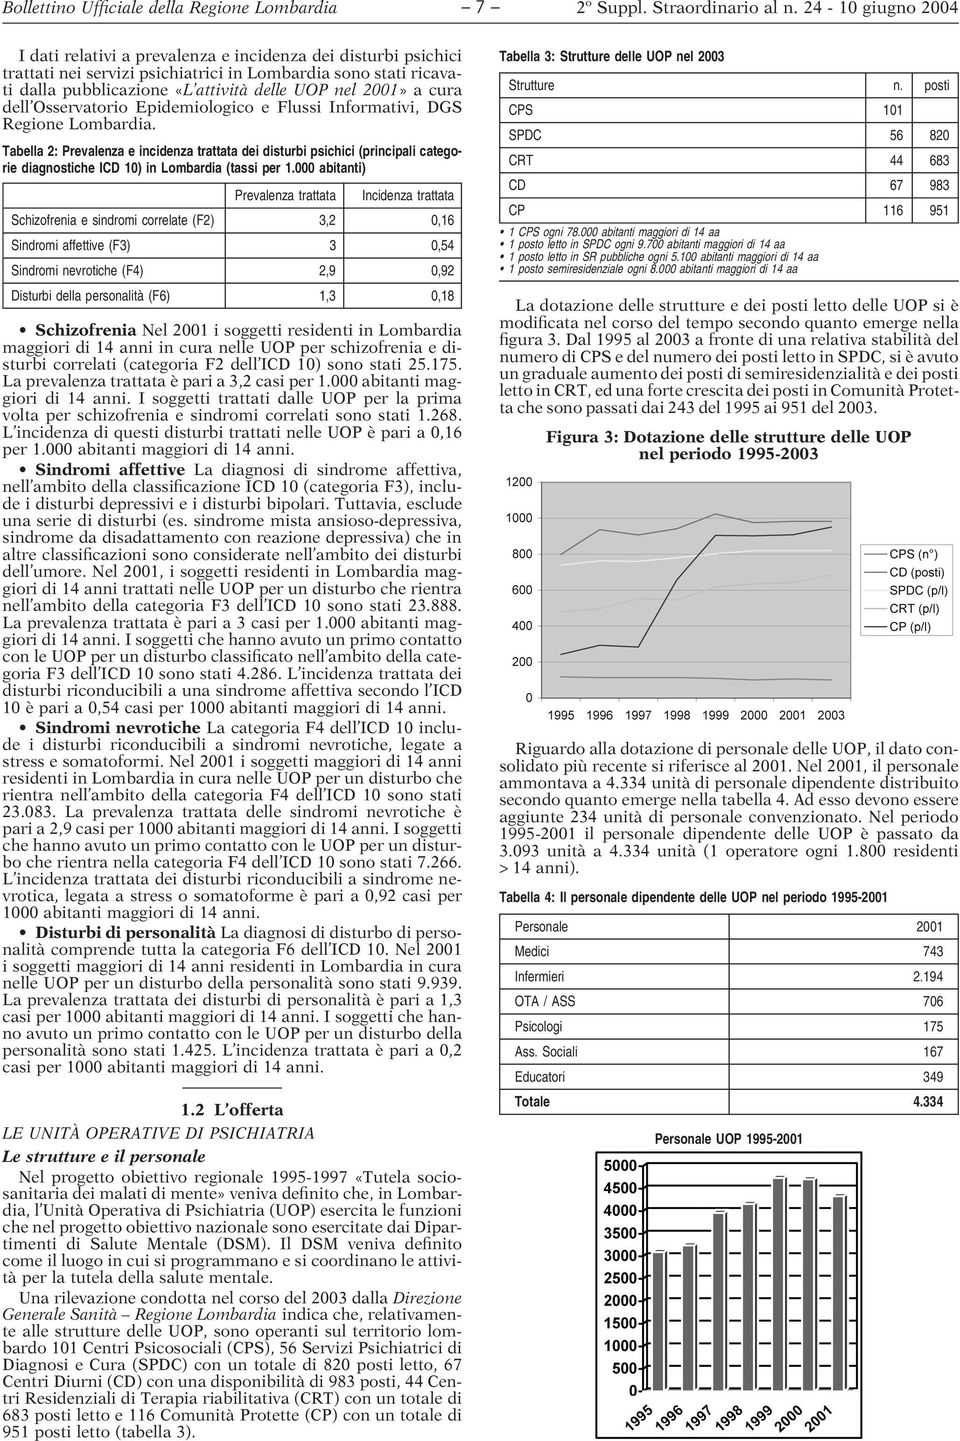 Tabella 2: Prevalenza e incidenza trattata dei disturbi psichici (principali categorie diagnostiche ICD 10) in Lombardia (tassi per 1.